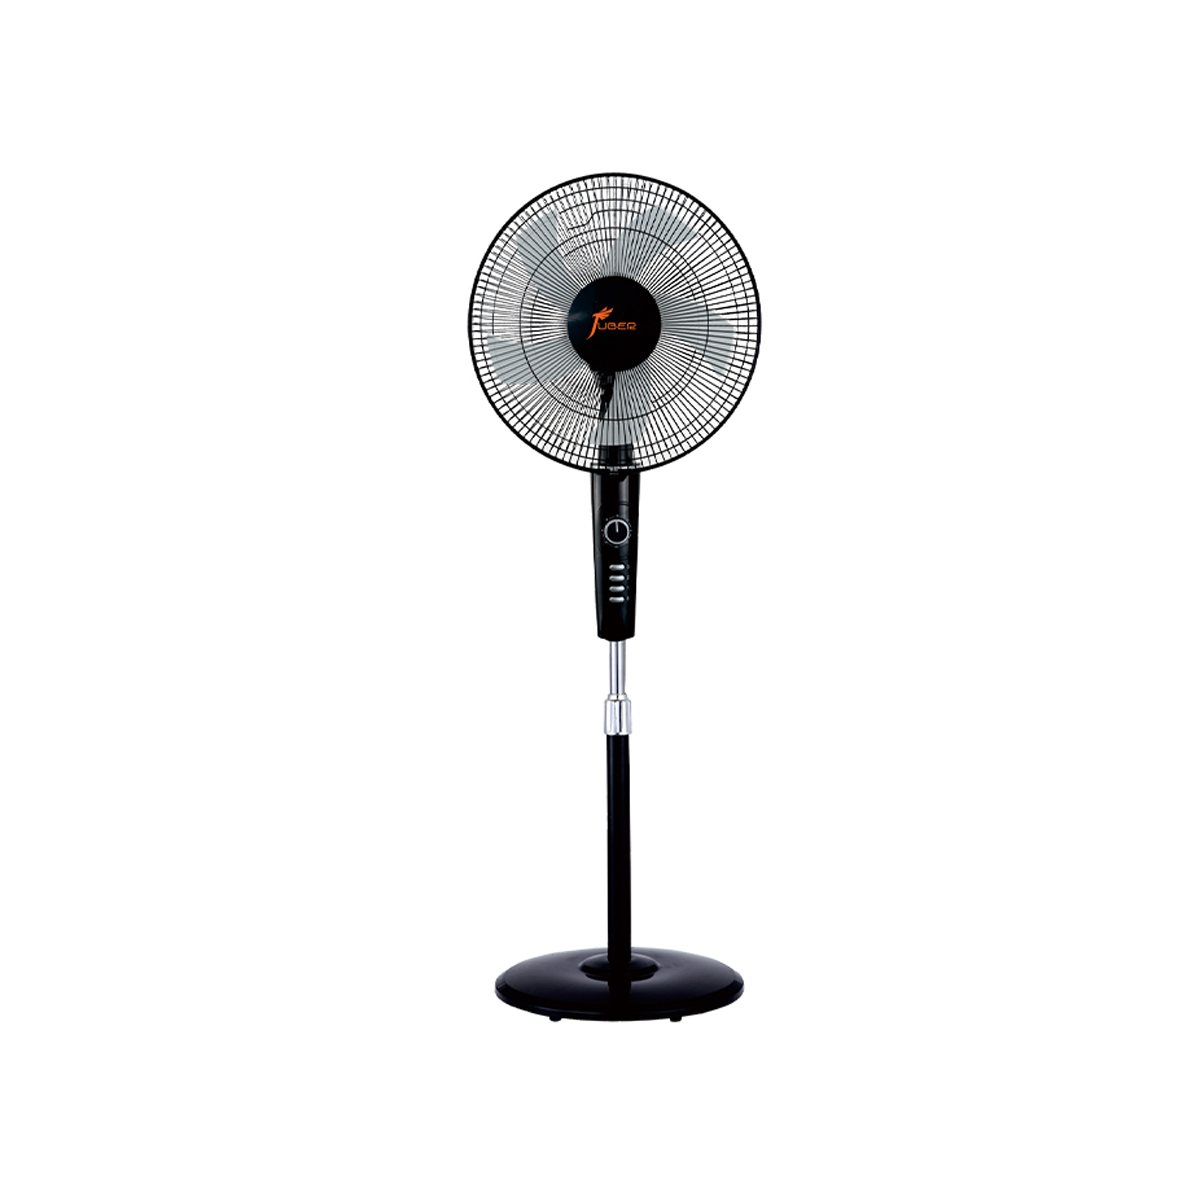 Juber 16 inch electric fan